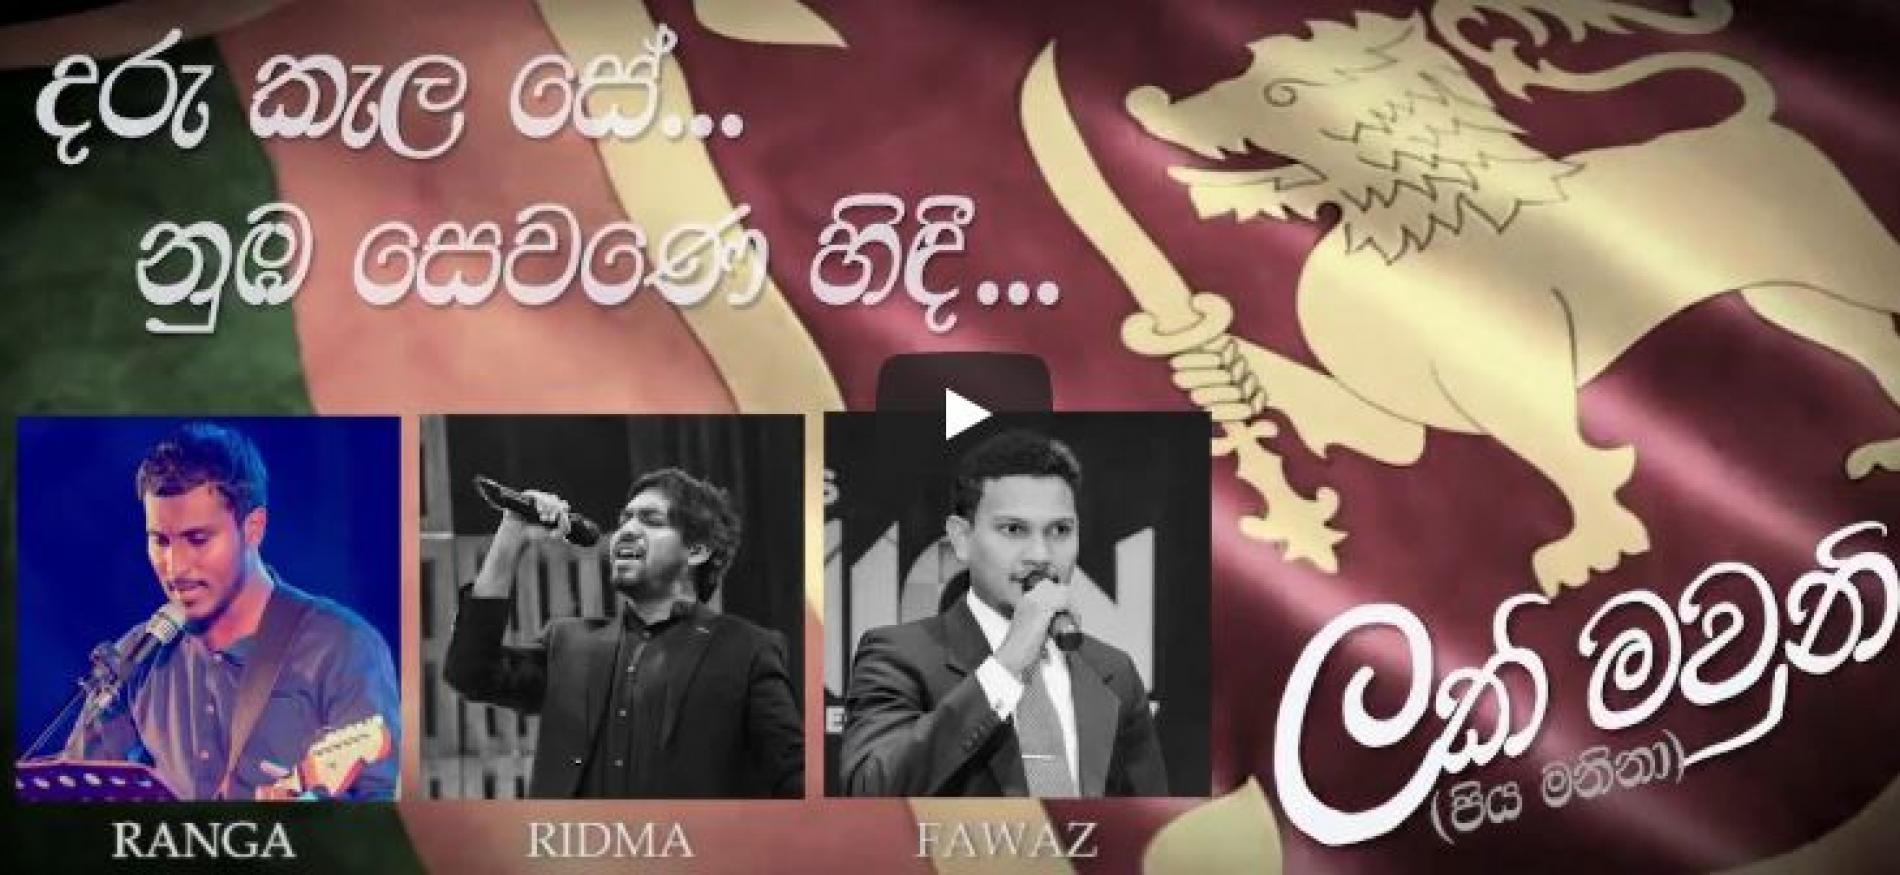 U Ranga Weerasekara Ft Ridma Weerawardena, Fawaz Razeek – Lakmauni (ලක්මවුනි) (Lyric Video)